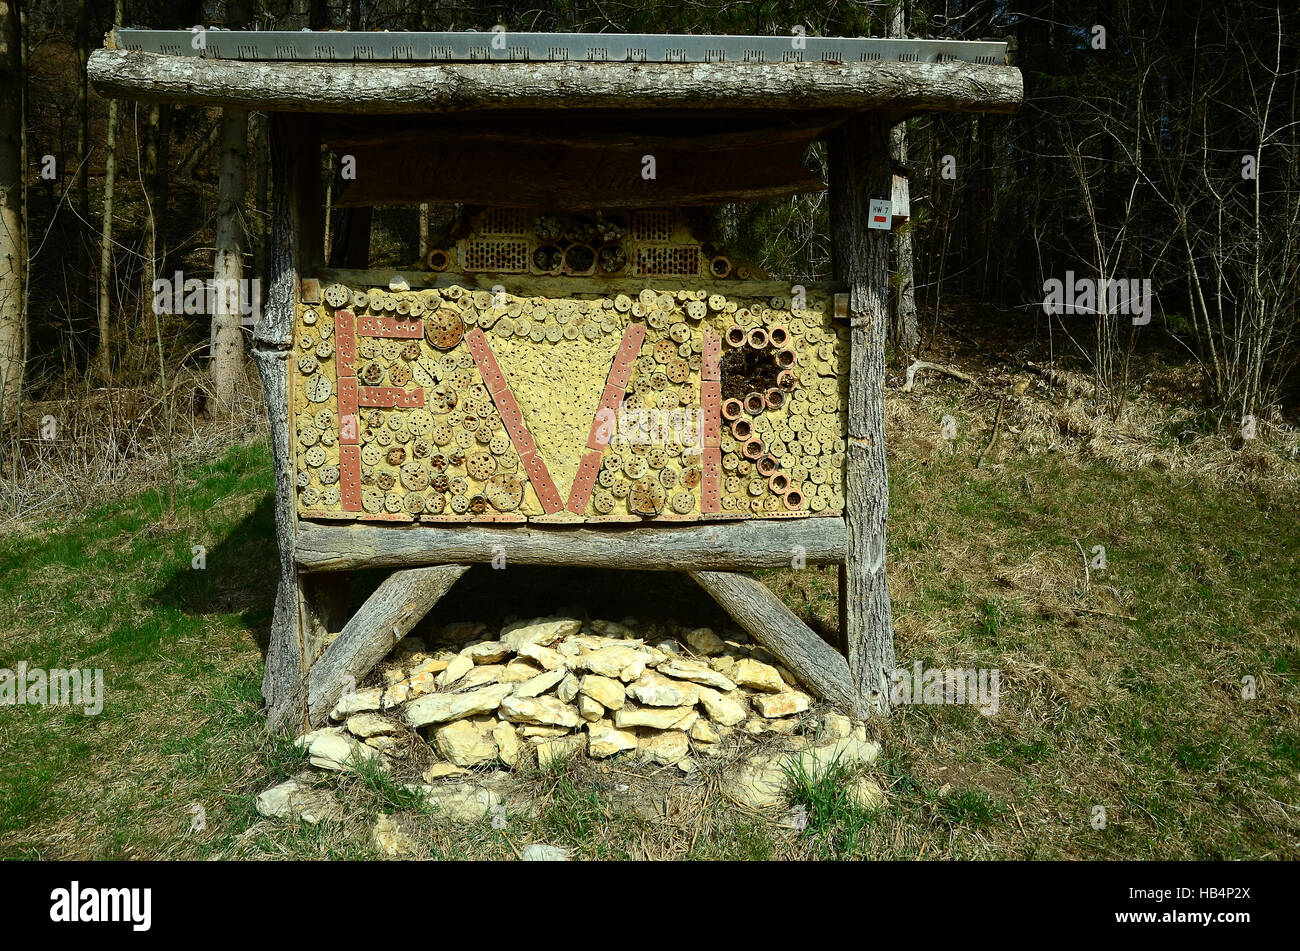 Muro de insectos, insectbox, Naturaleza, Conservación Foto de stock